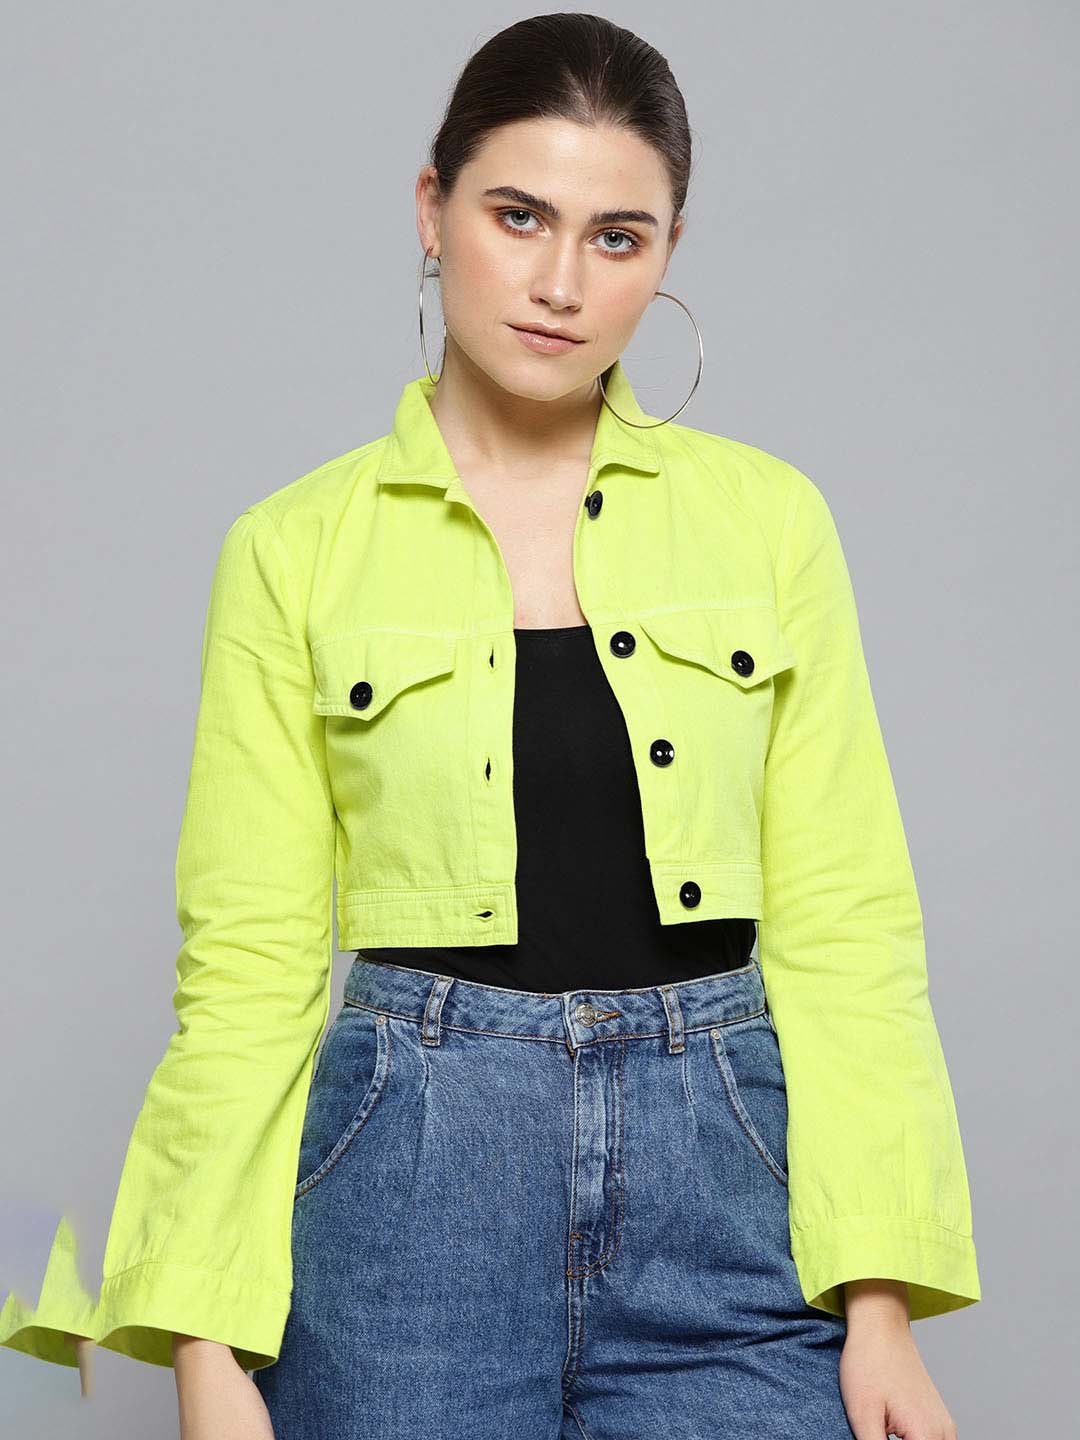 Neon Denim Jackets - Buy Neon Denim Jackets online in India